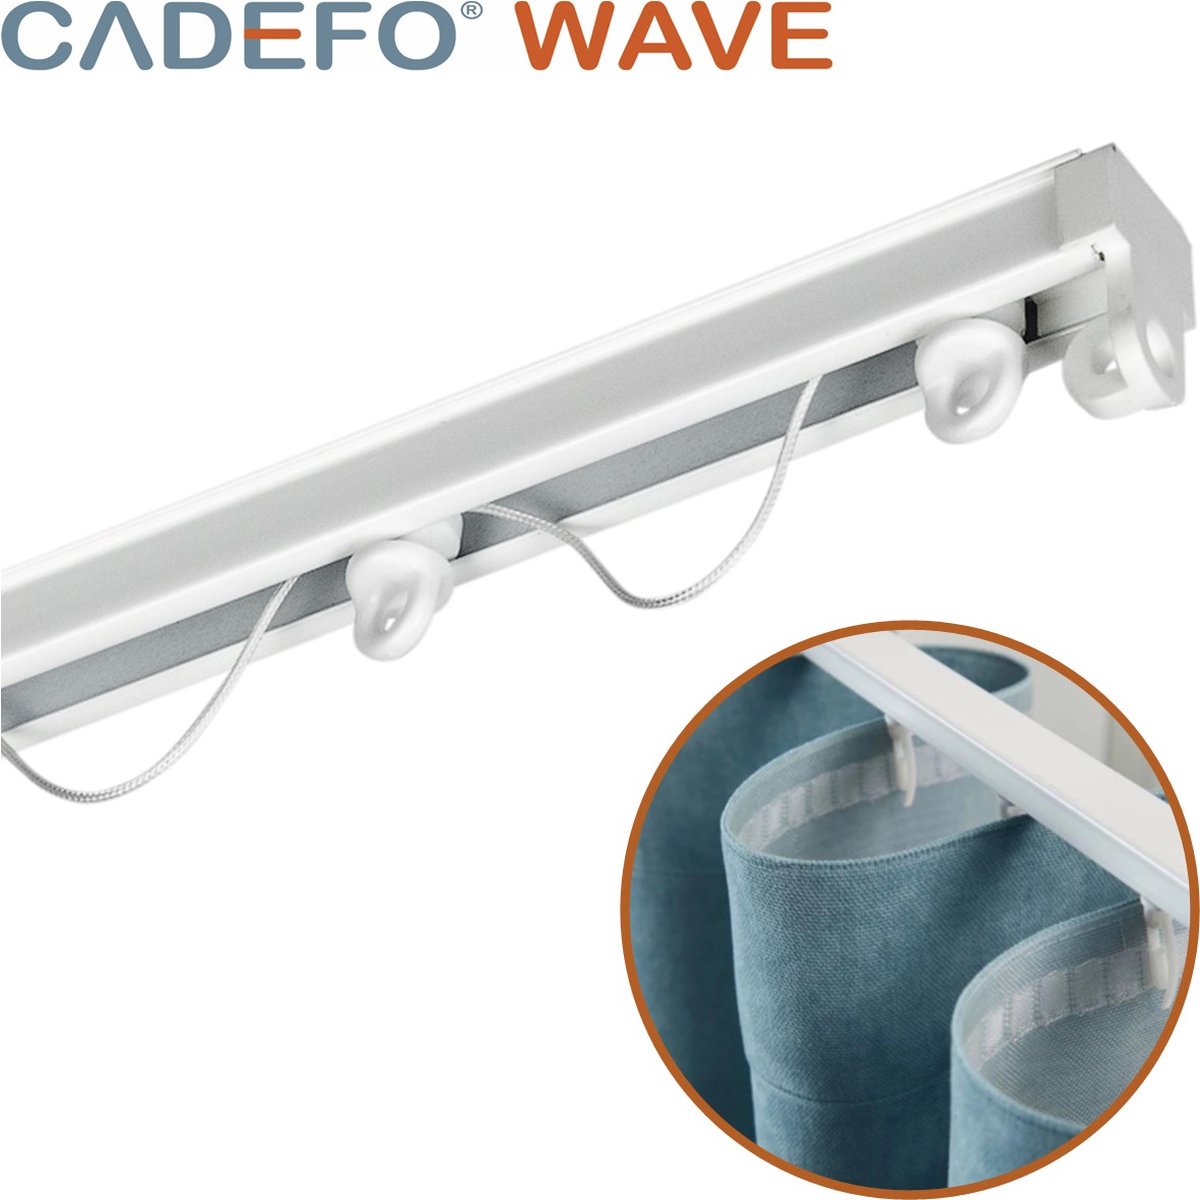 CADEFO WAVE (351 - 400 cm) Gordijnrails - Compleet op maat! - UIT 1 STUK - Leverbaar tot 6 meter - Plafondbevestiging - Lengte 373 cm